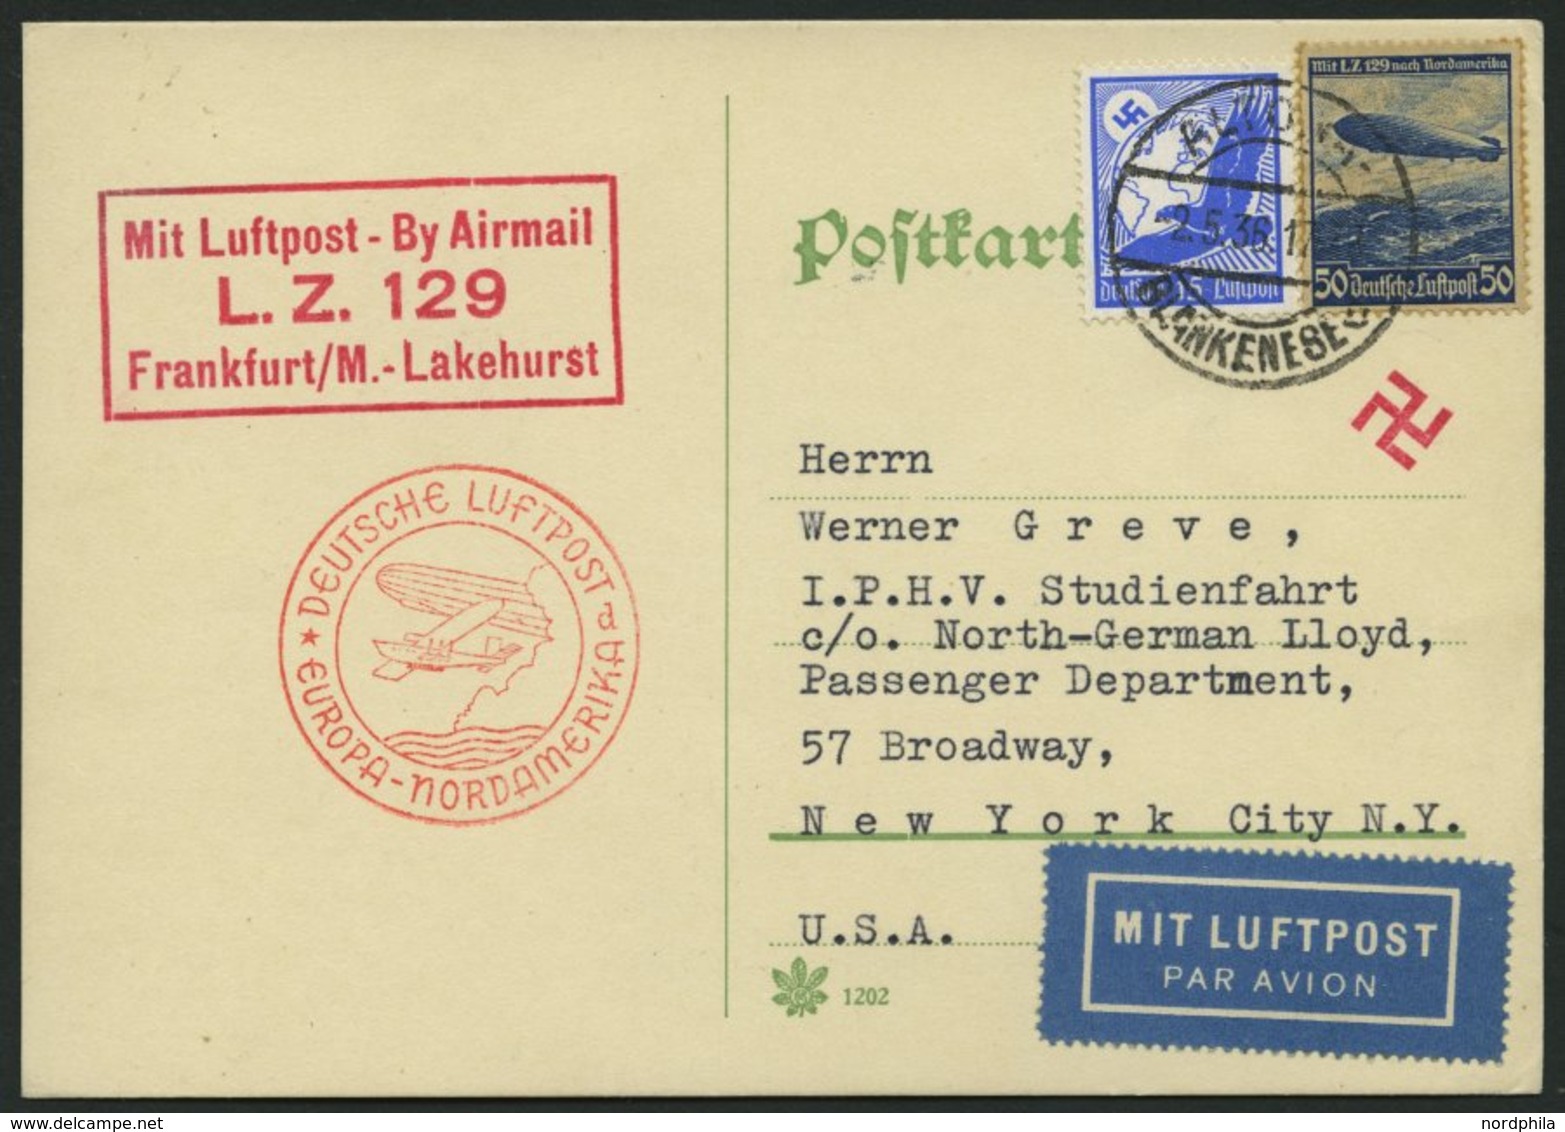 ZEPPELINPOST 406D BRIEF, 1936, 1. Nordamerikafahrt, Auflieferung Frankfurt, Prachtkarte Nach New York - Zeppelin